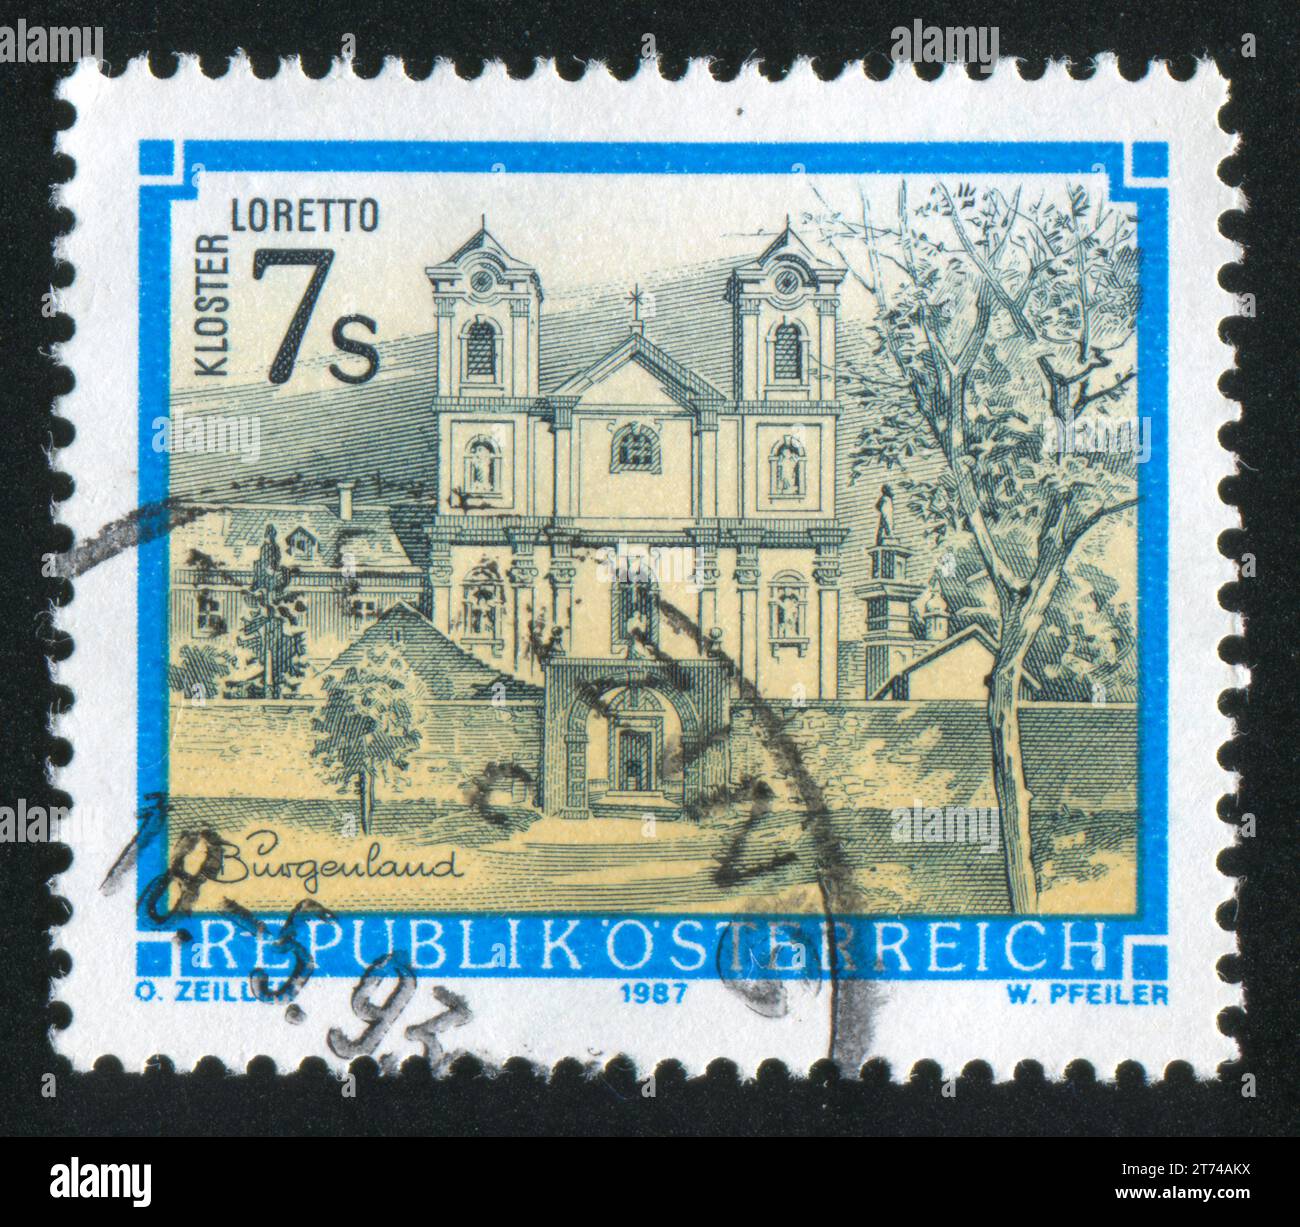 AUSTRIA - CIRCA 1987: Timbro stampato dall'Austria, mostra il monastero di Loretto in Burgenland, circa 1987 Foto Stock